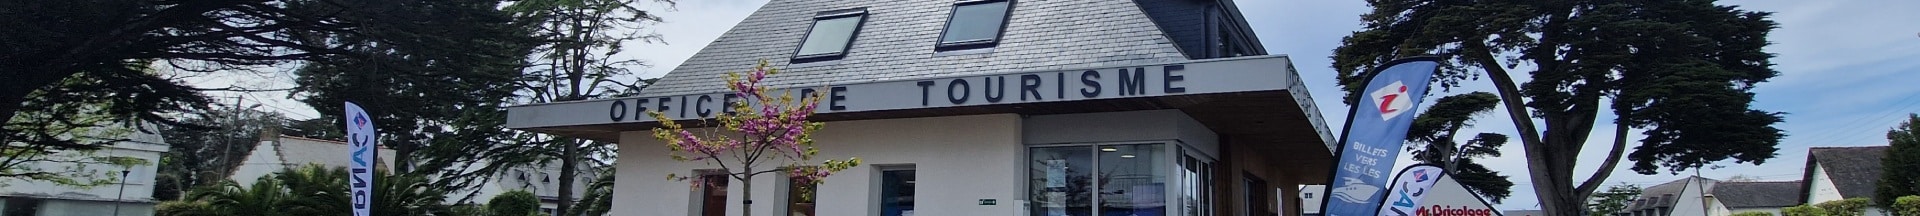 Office de tourisme de Carnac avec service billetterie